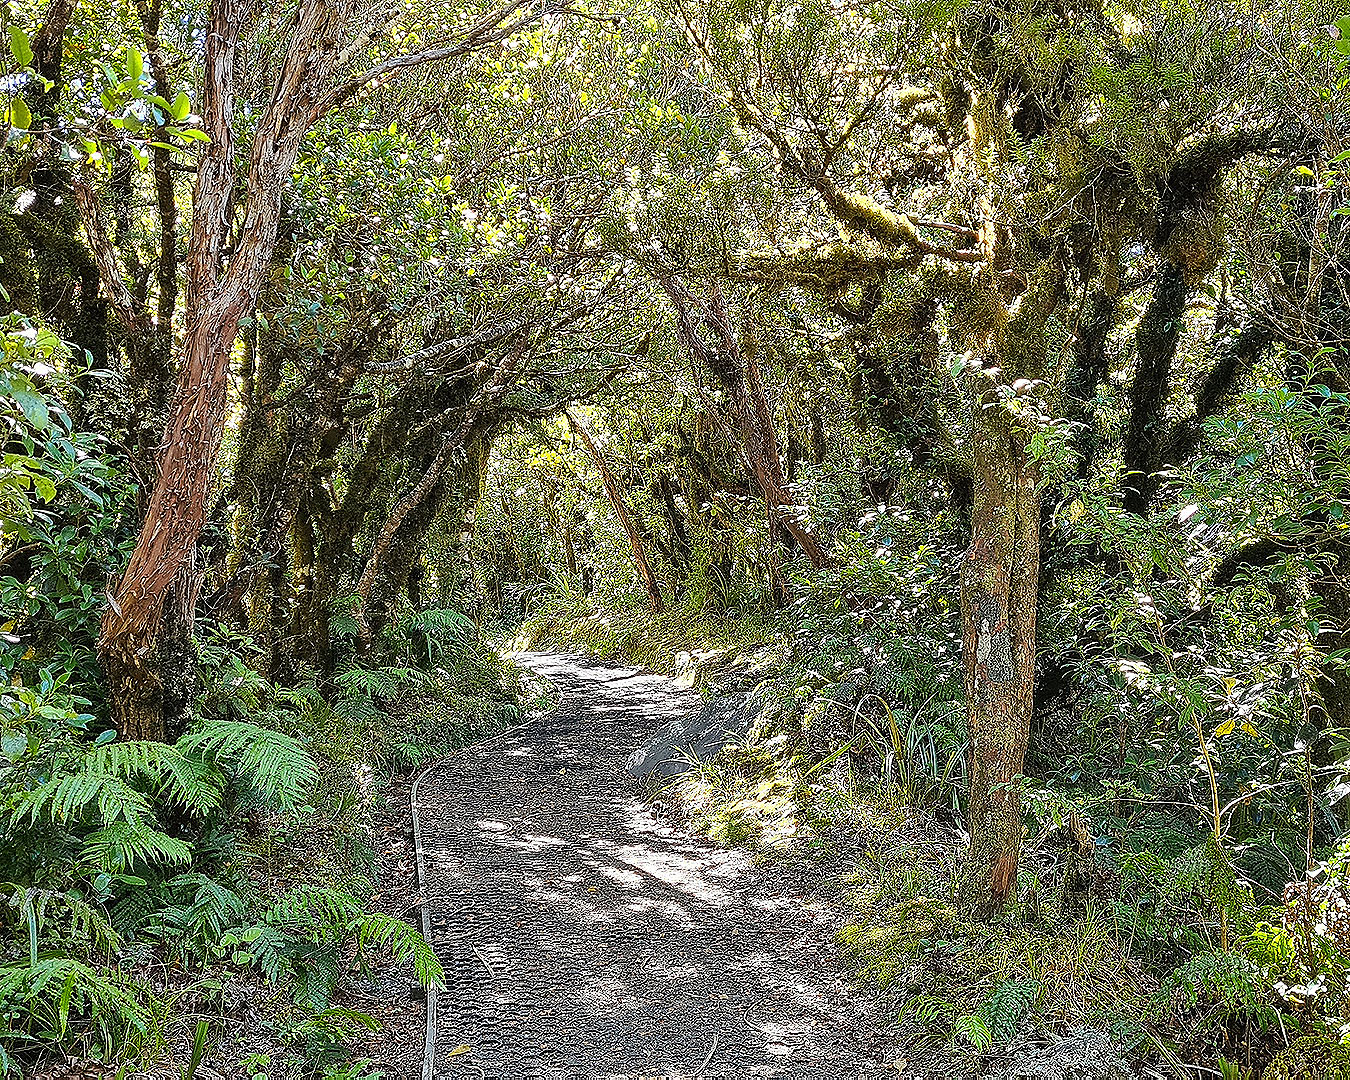 A gnarled entrance to the goblin forest in Taranaki.